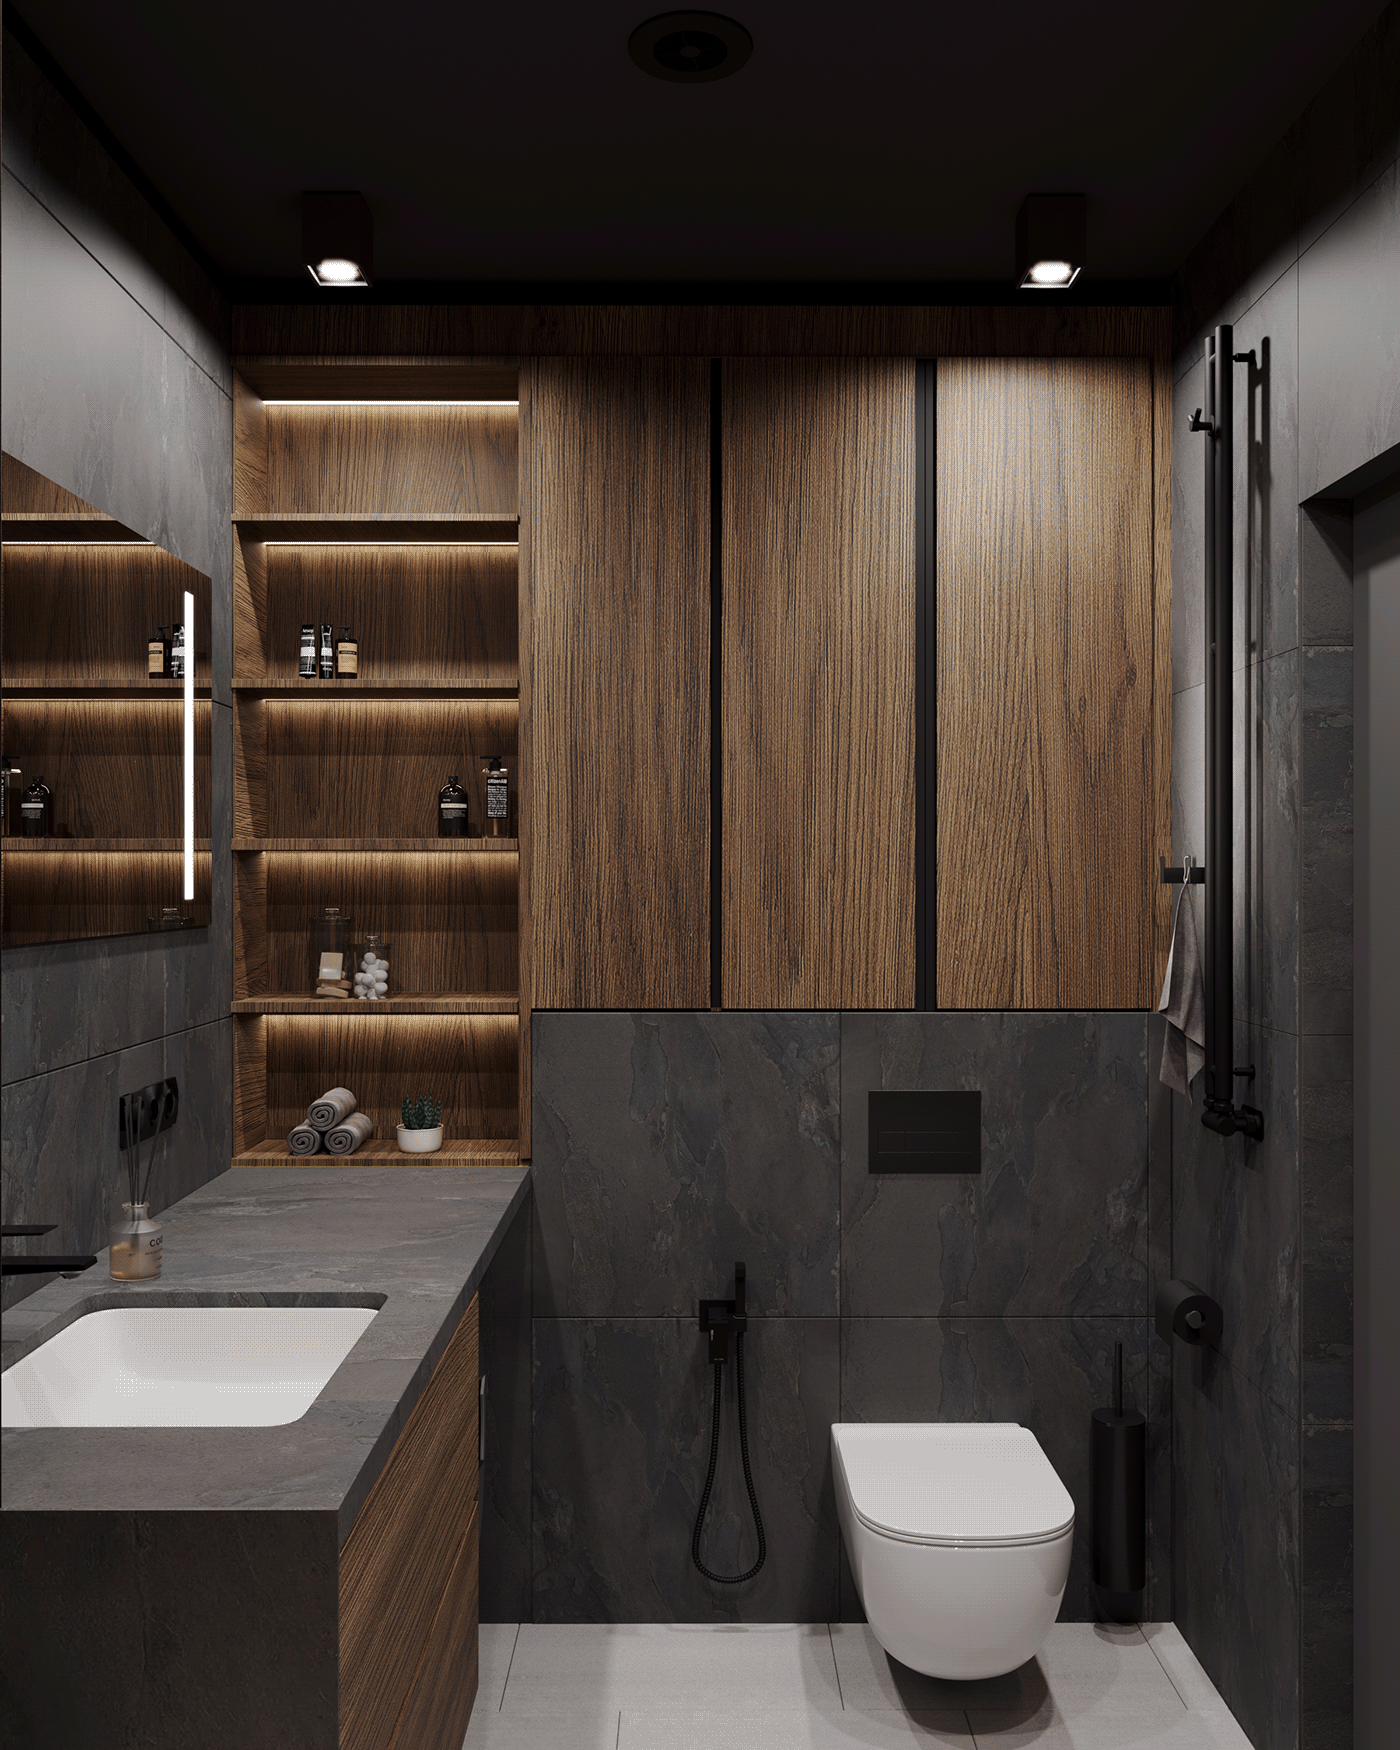 3ds max 3D Render visualization corona vray bathroom Interior architecture